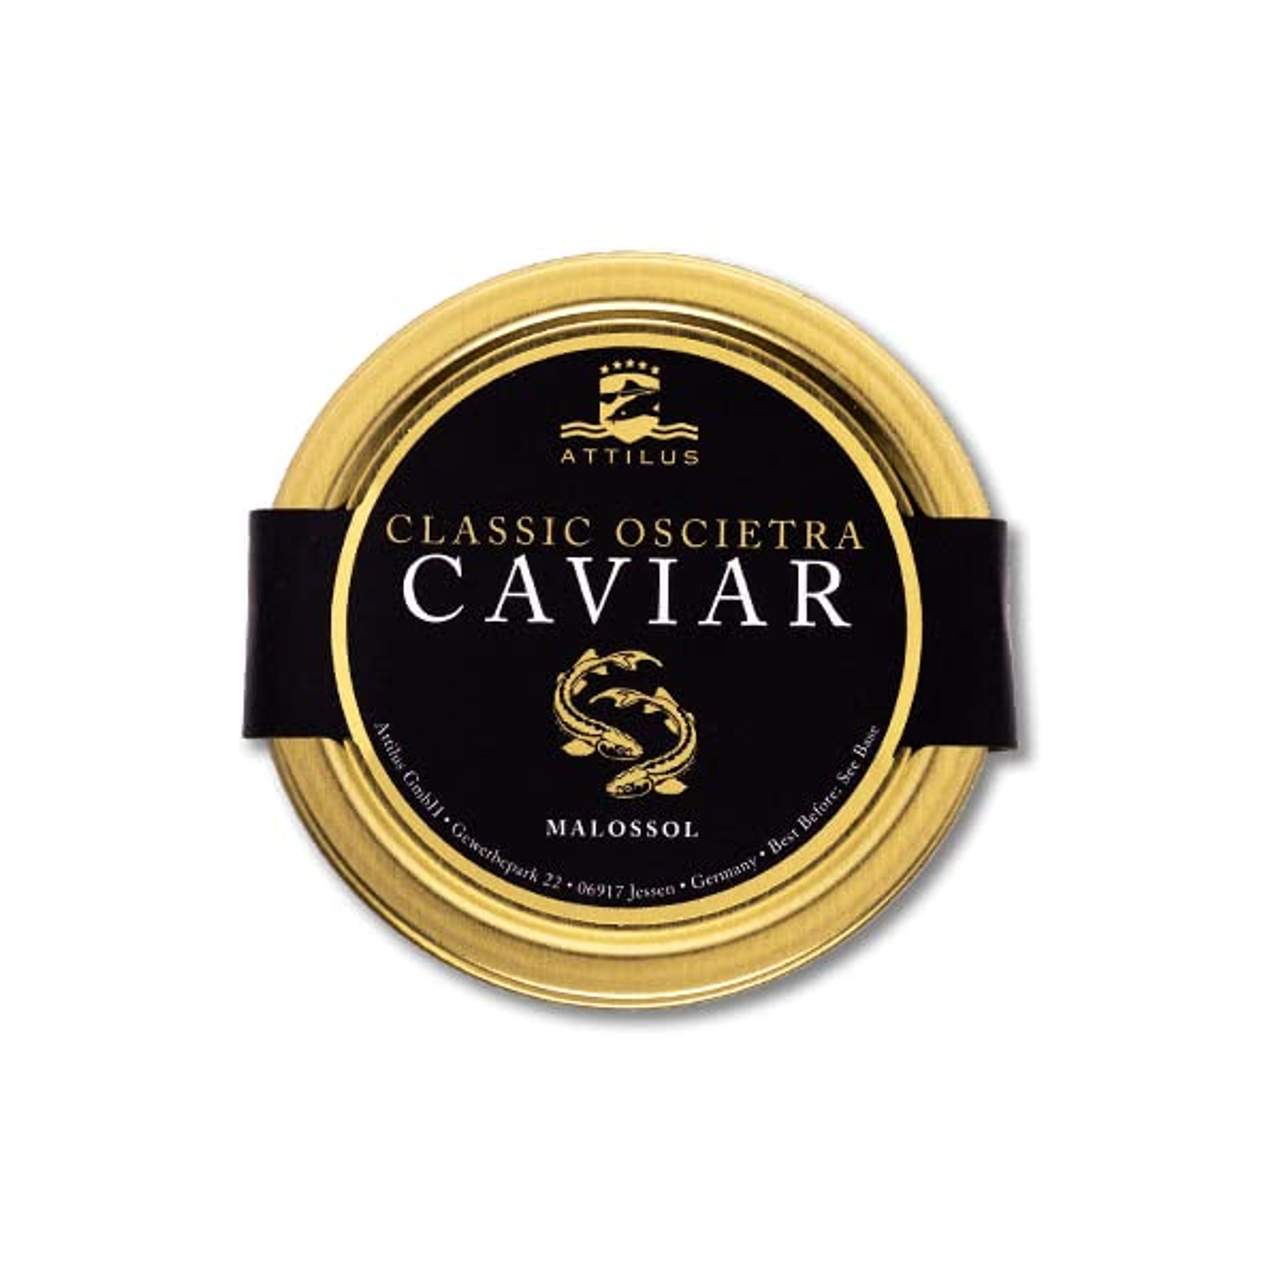 Attilus Kaviar Classic Oscietra Caviar